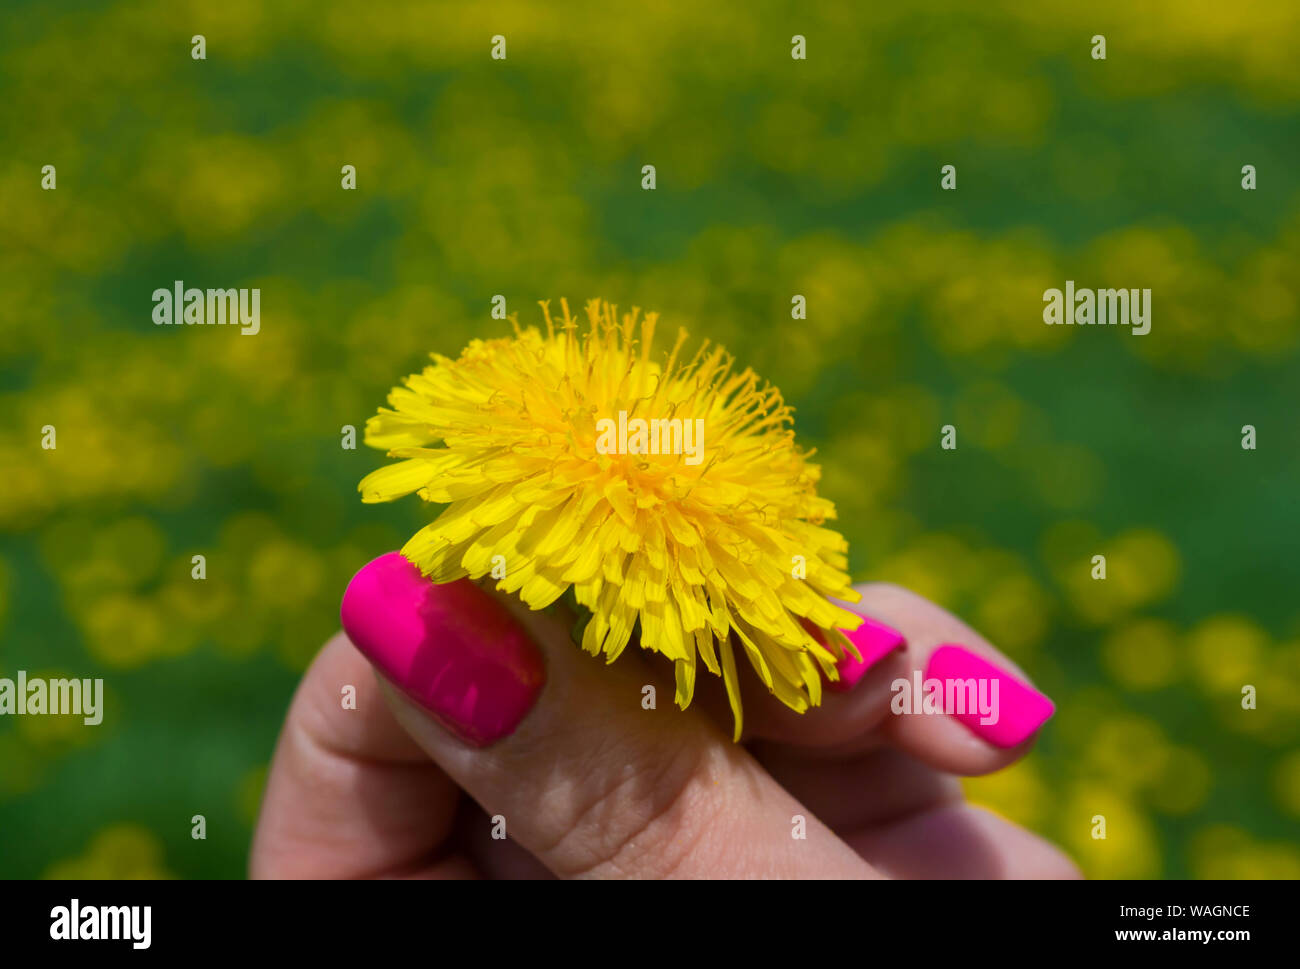 Bella donna mani con unghie rosa tenendo un fiore giallo, manicure arte nella natura. Donna mano che tiene un fiore giallo. Foto Stock